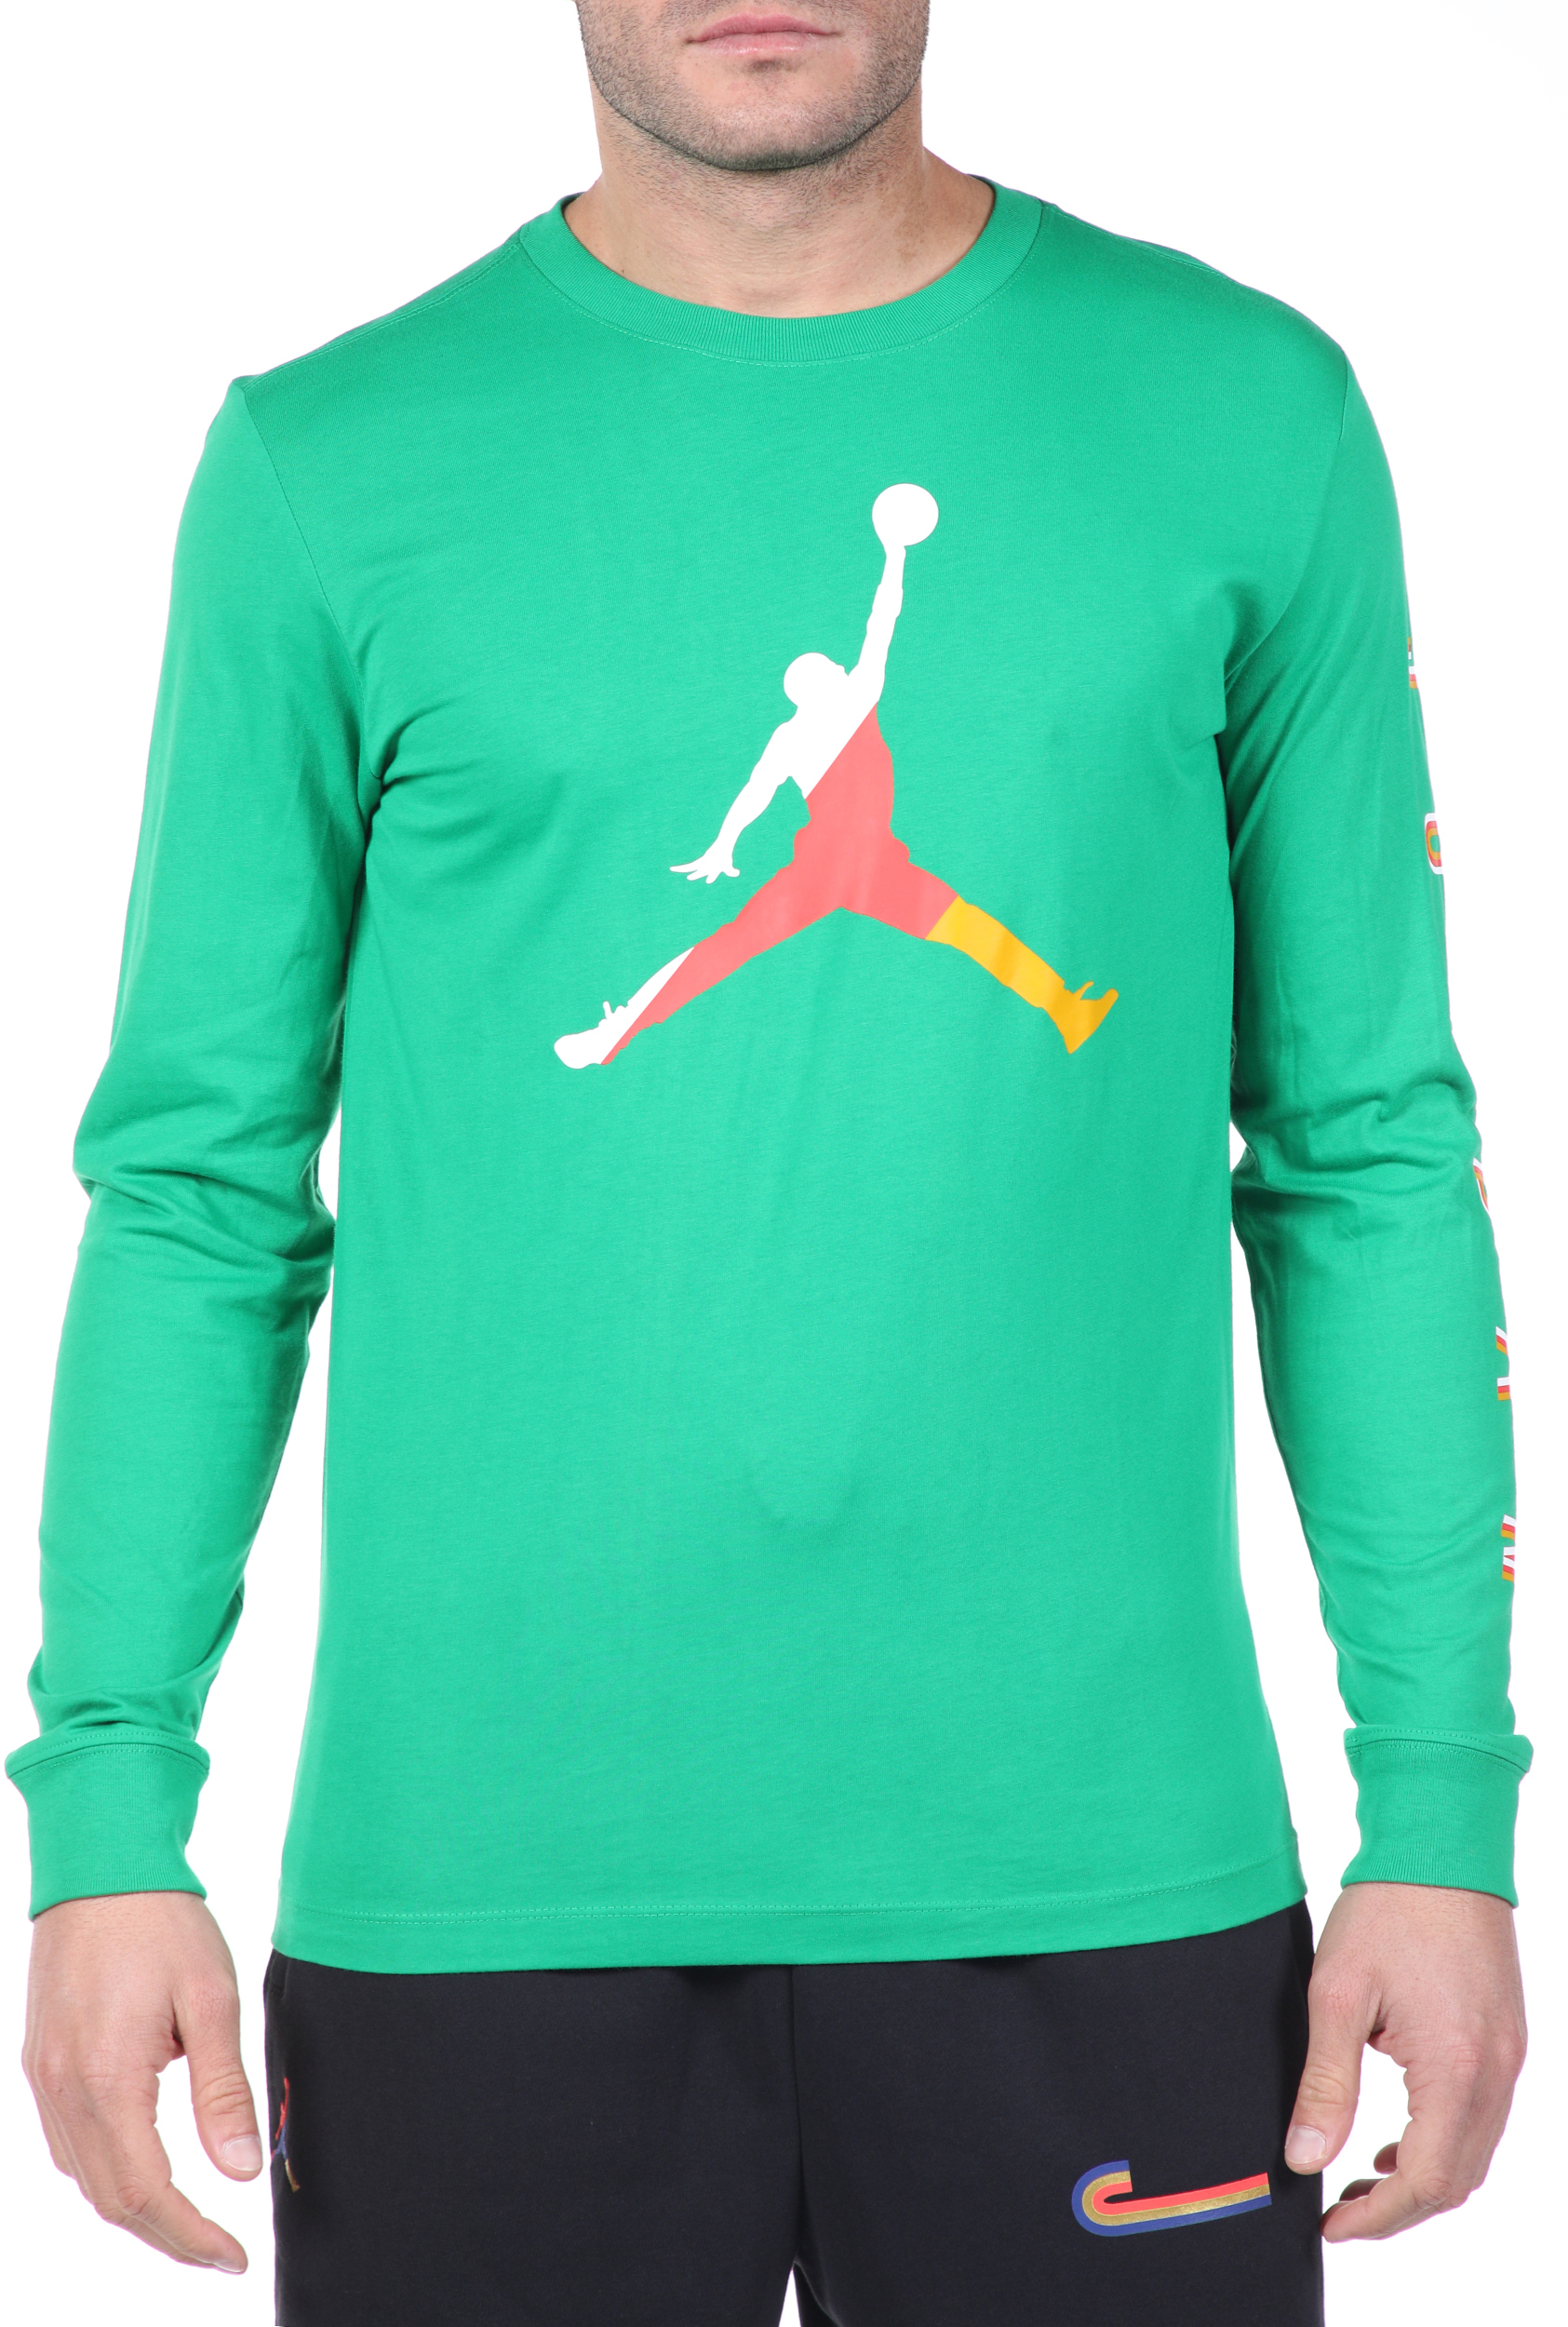 Ανδρικά/Ρούχα/Αθλητικά/Φούτερ-Μακρυμάνικα NIKE - Ανδρική μπλούζα NIKE M J SPRTDNA LS CREW πράσινη